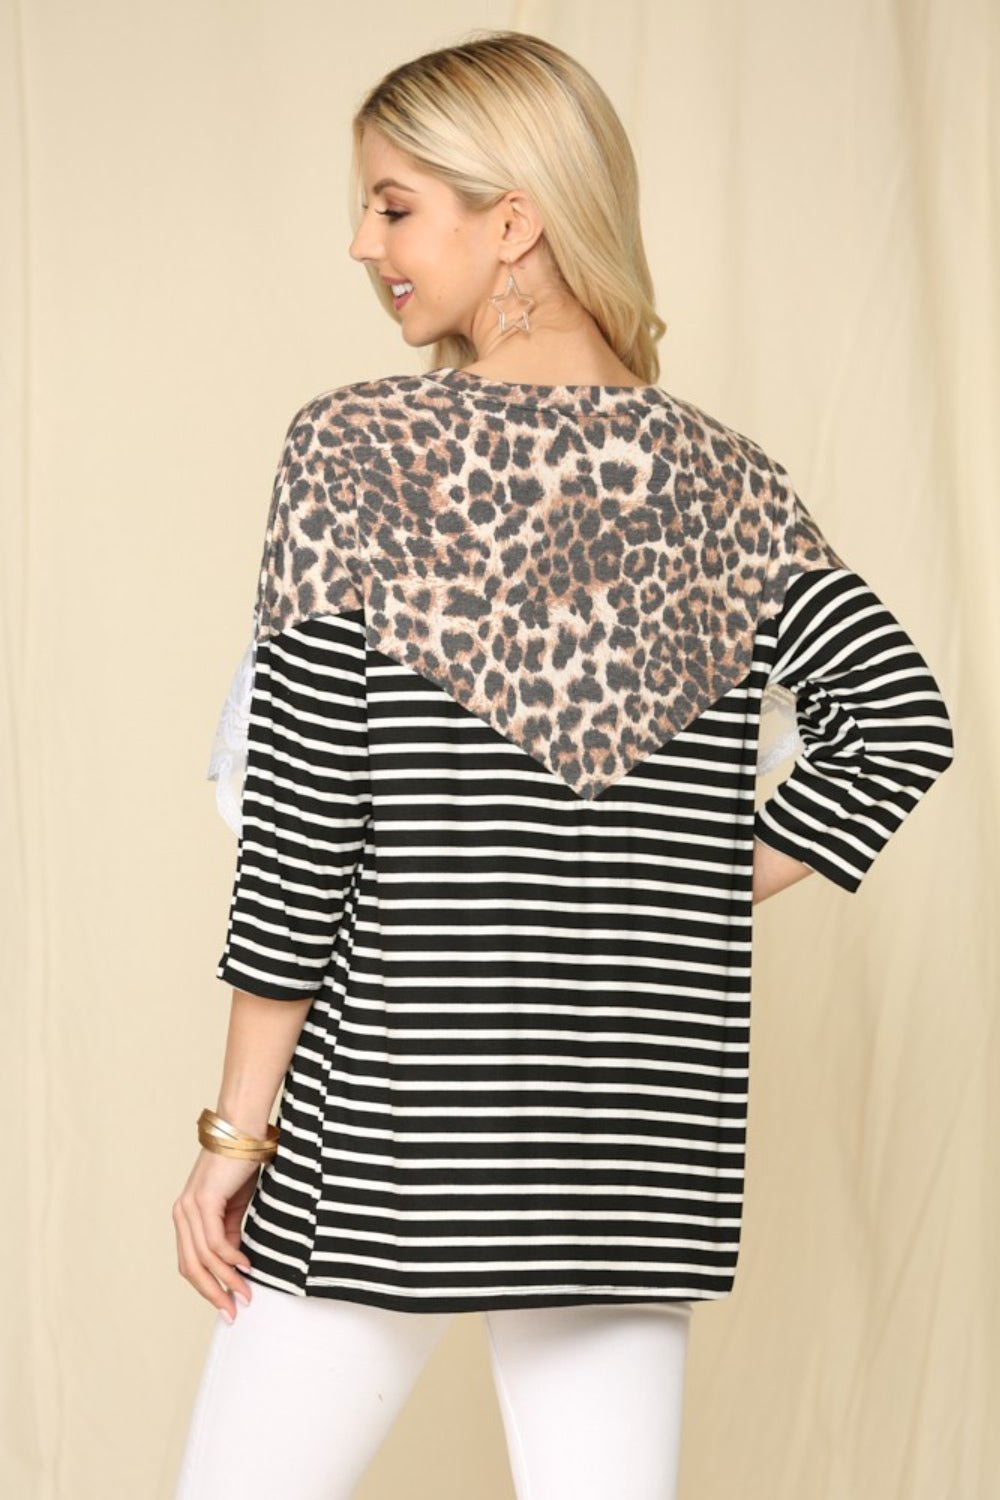 Leopard Spliced Stripe T-Shirt with Lace DetailT-ShirtCeleste Design